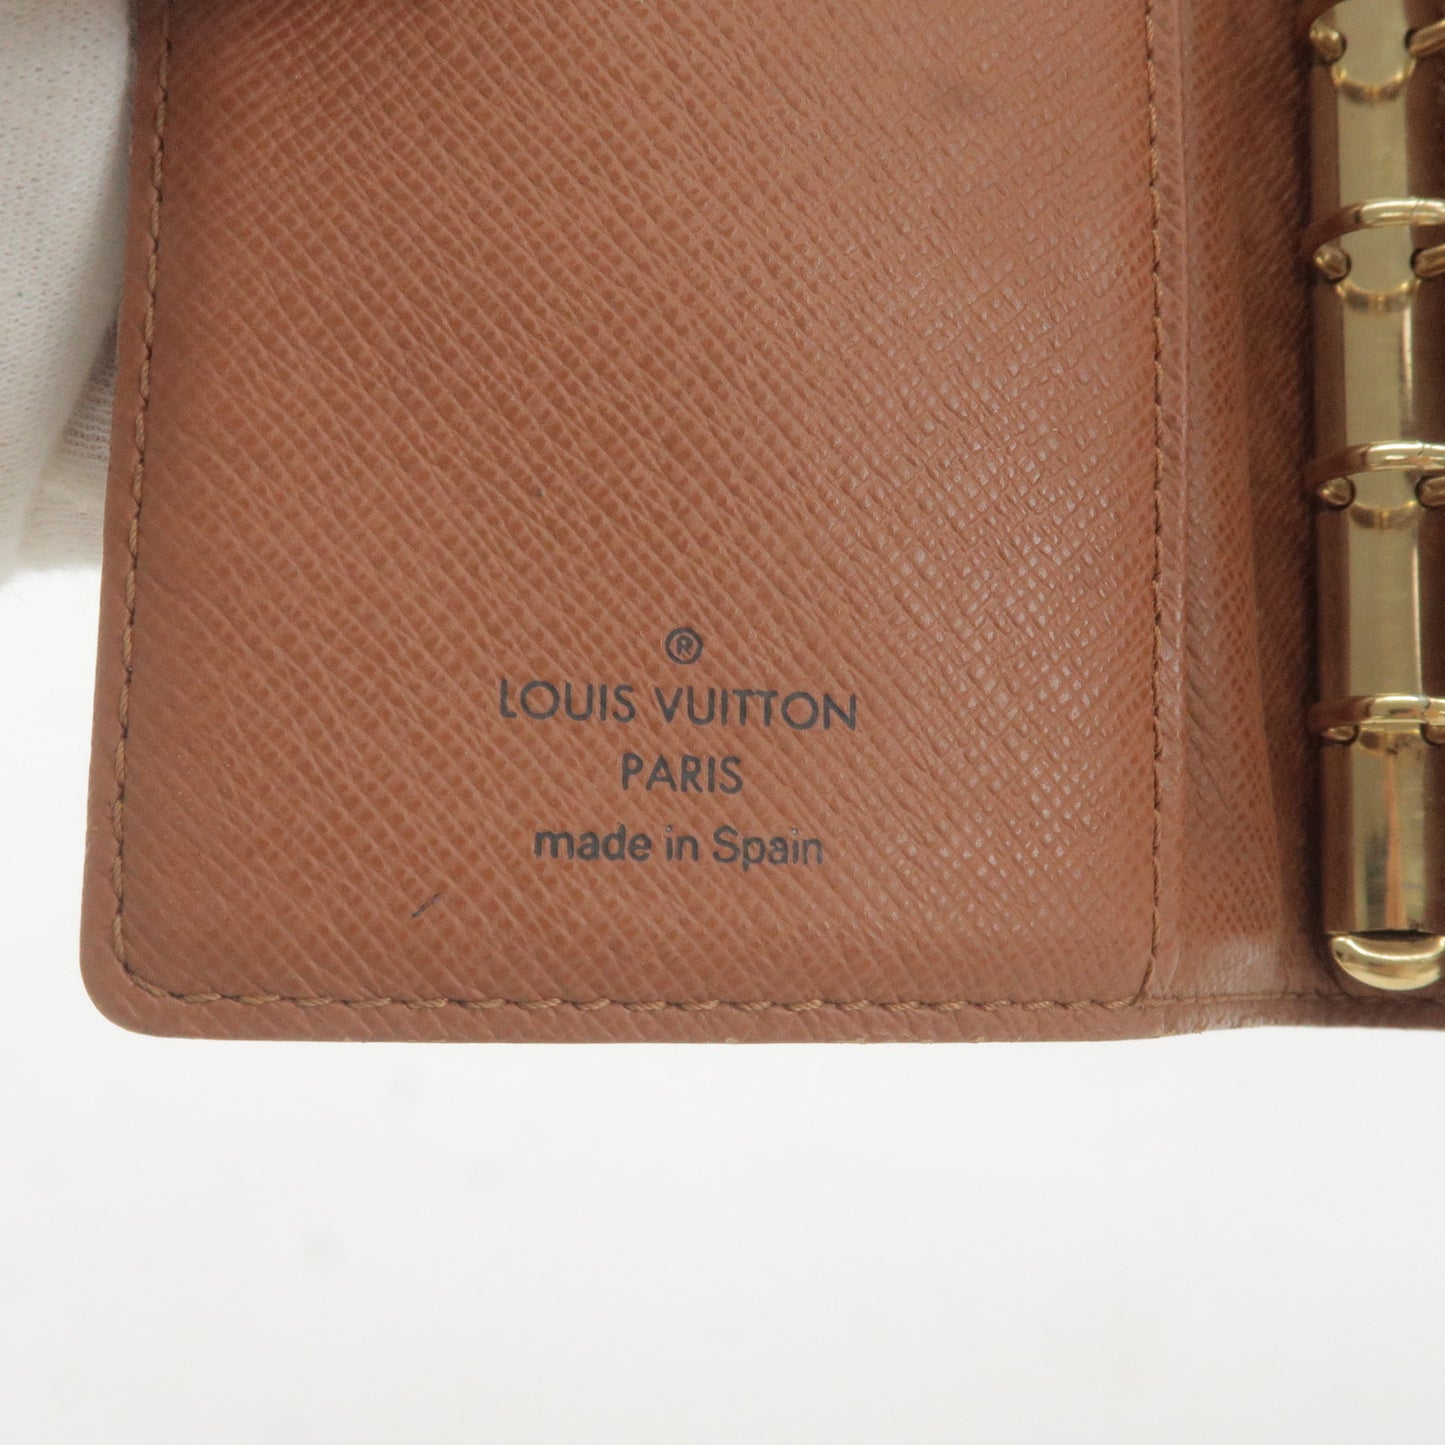 Louis Vuitton Monogram Set of 2 Agenda PM Planner Cover R20005